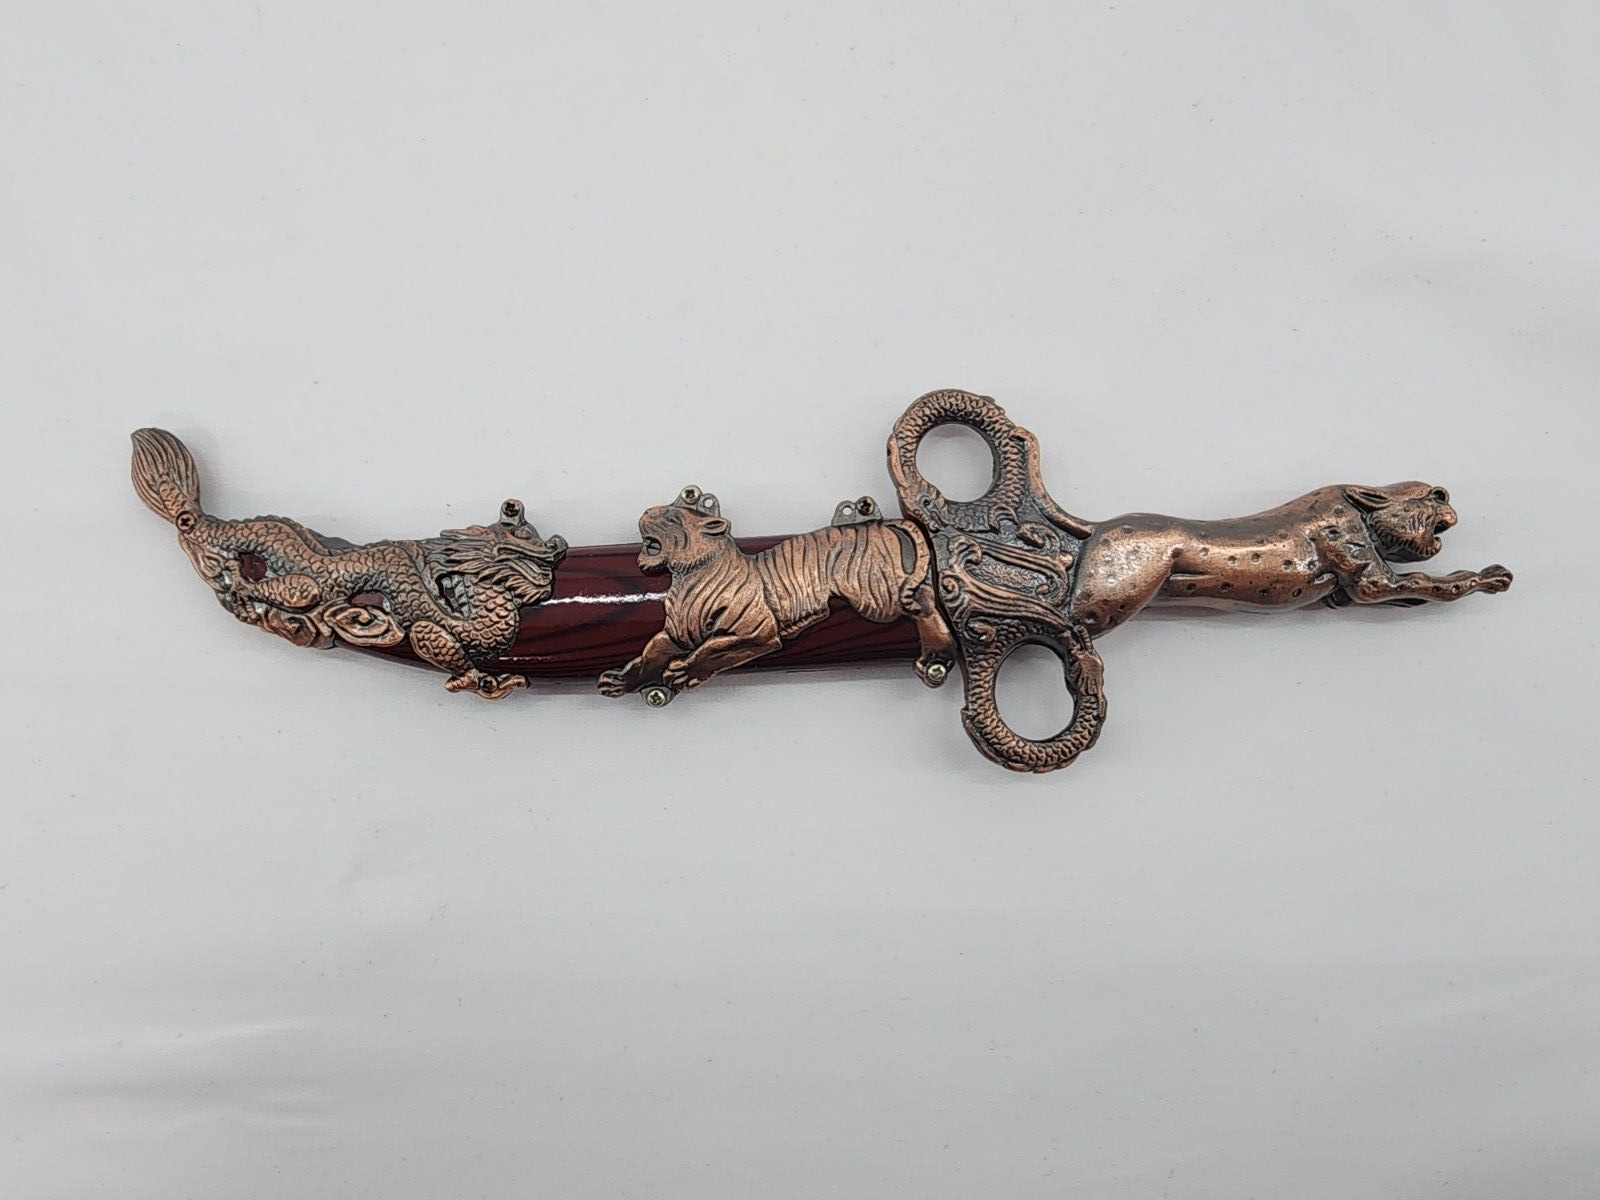 Oriental Ceremonial Dagger Ornamental Sheath with Dragon, Tiger & Leopard